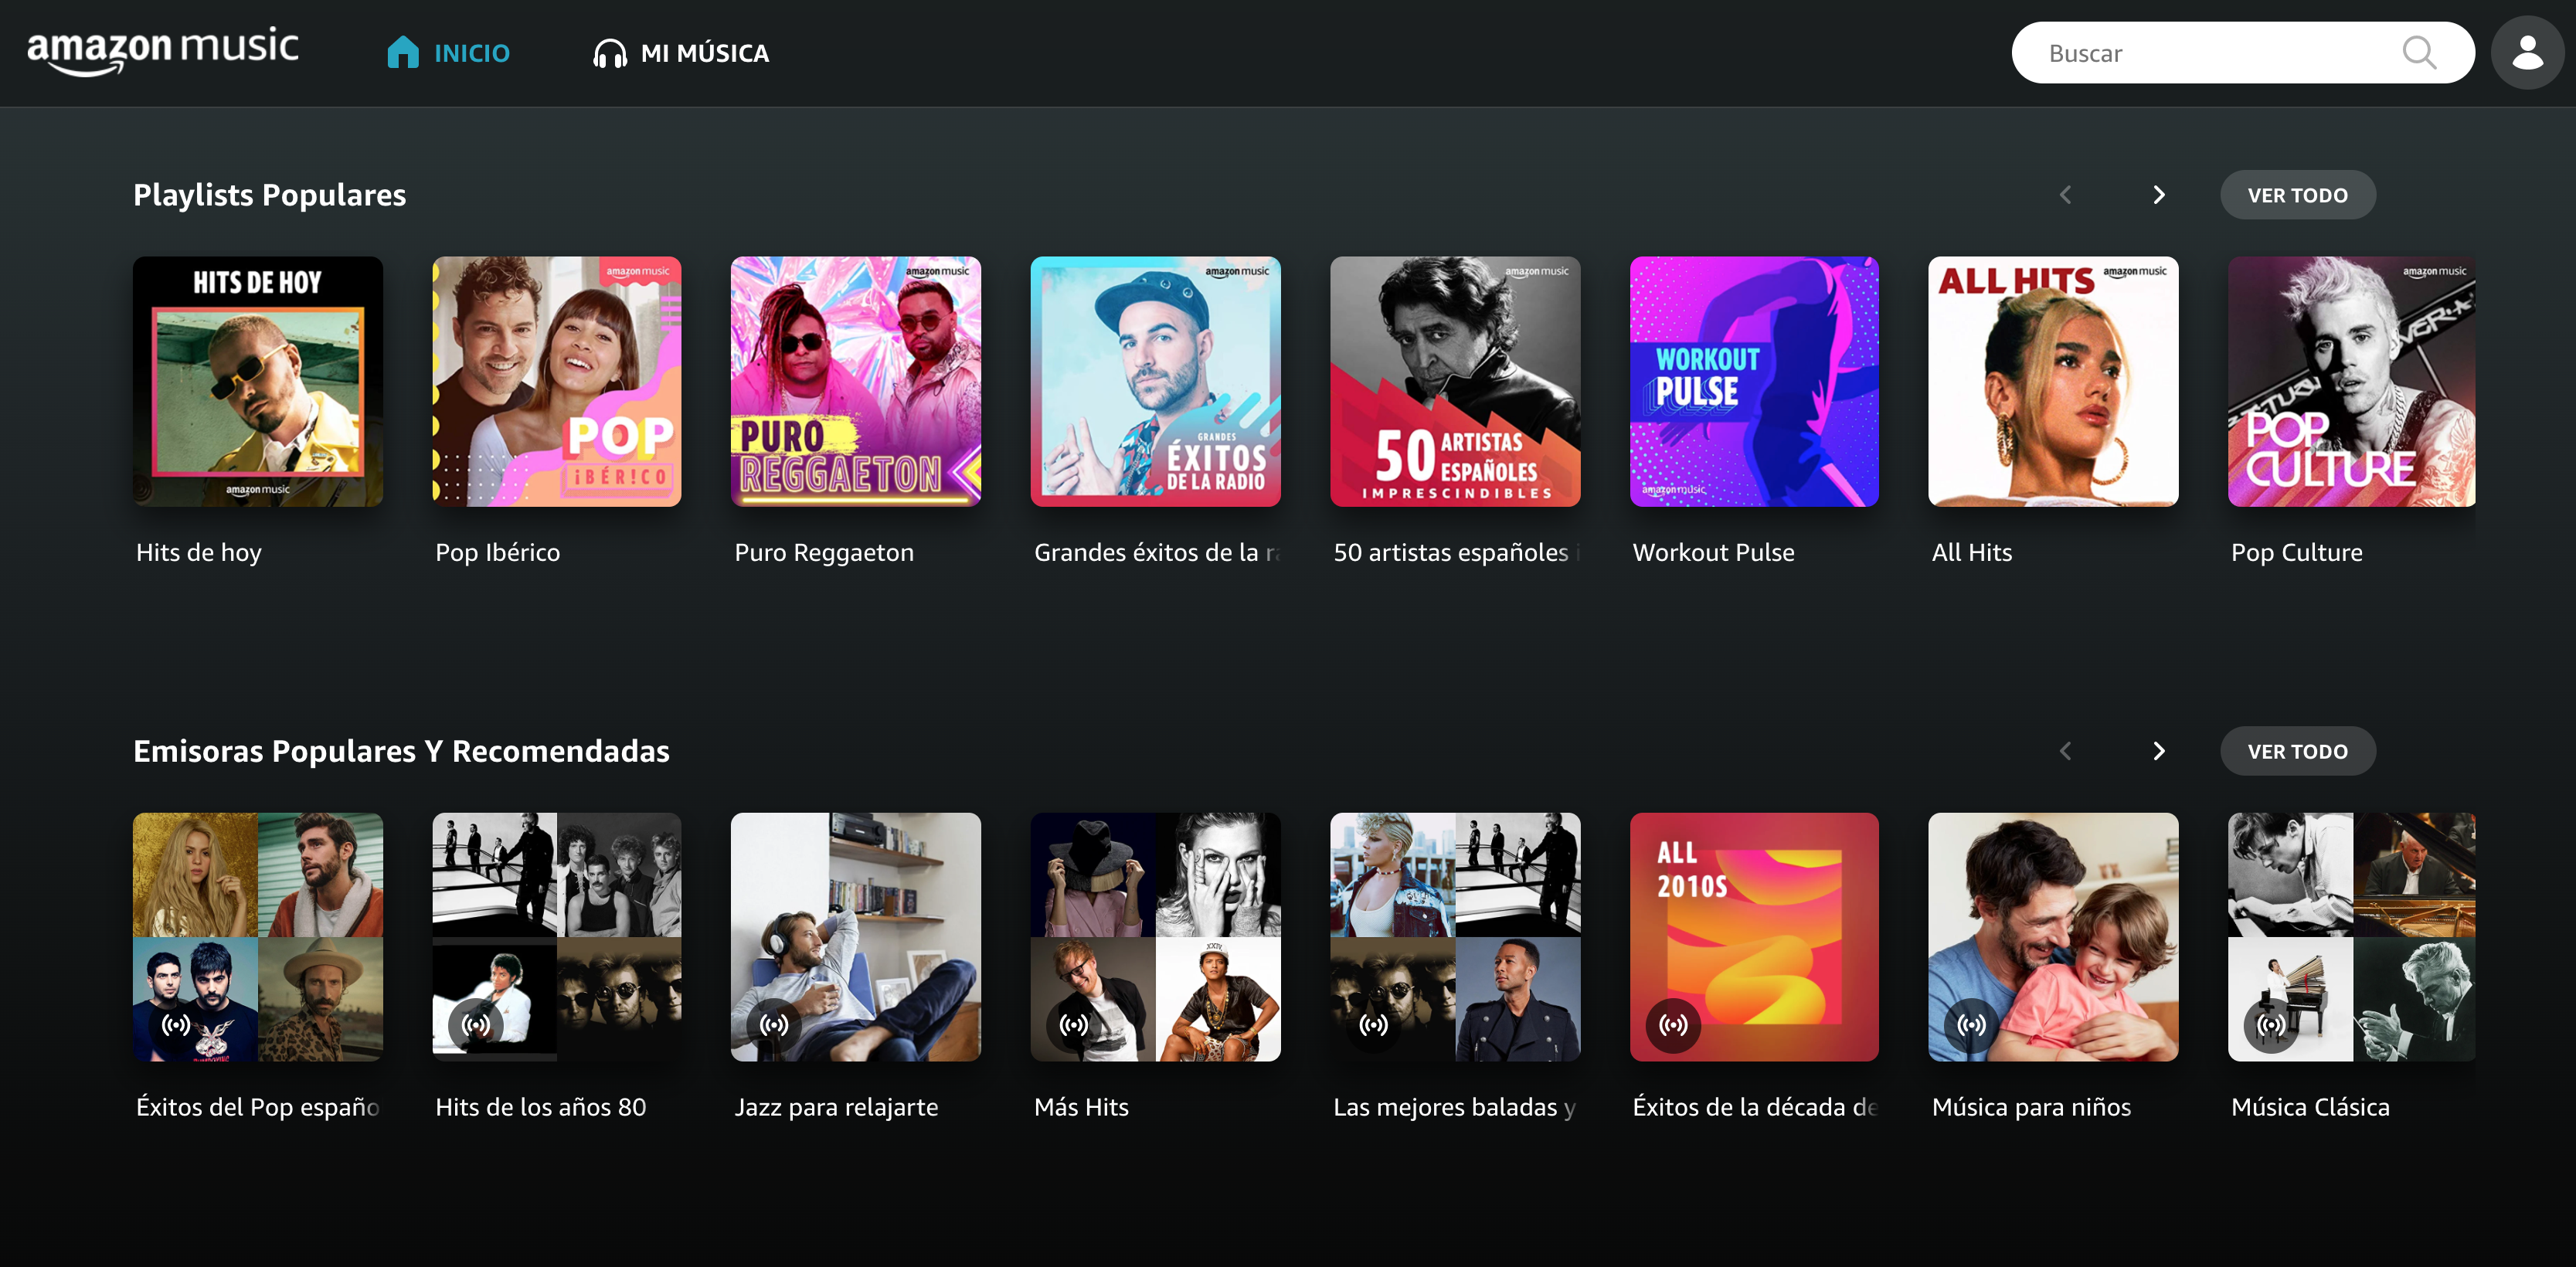 Amazon Music cara cara con Spotify, se vuelve ahora gratis para todos